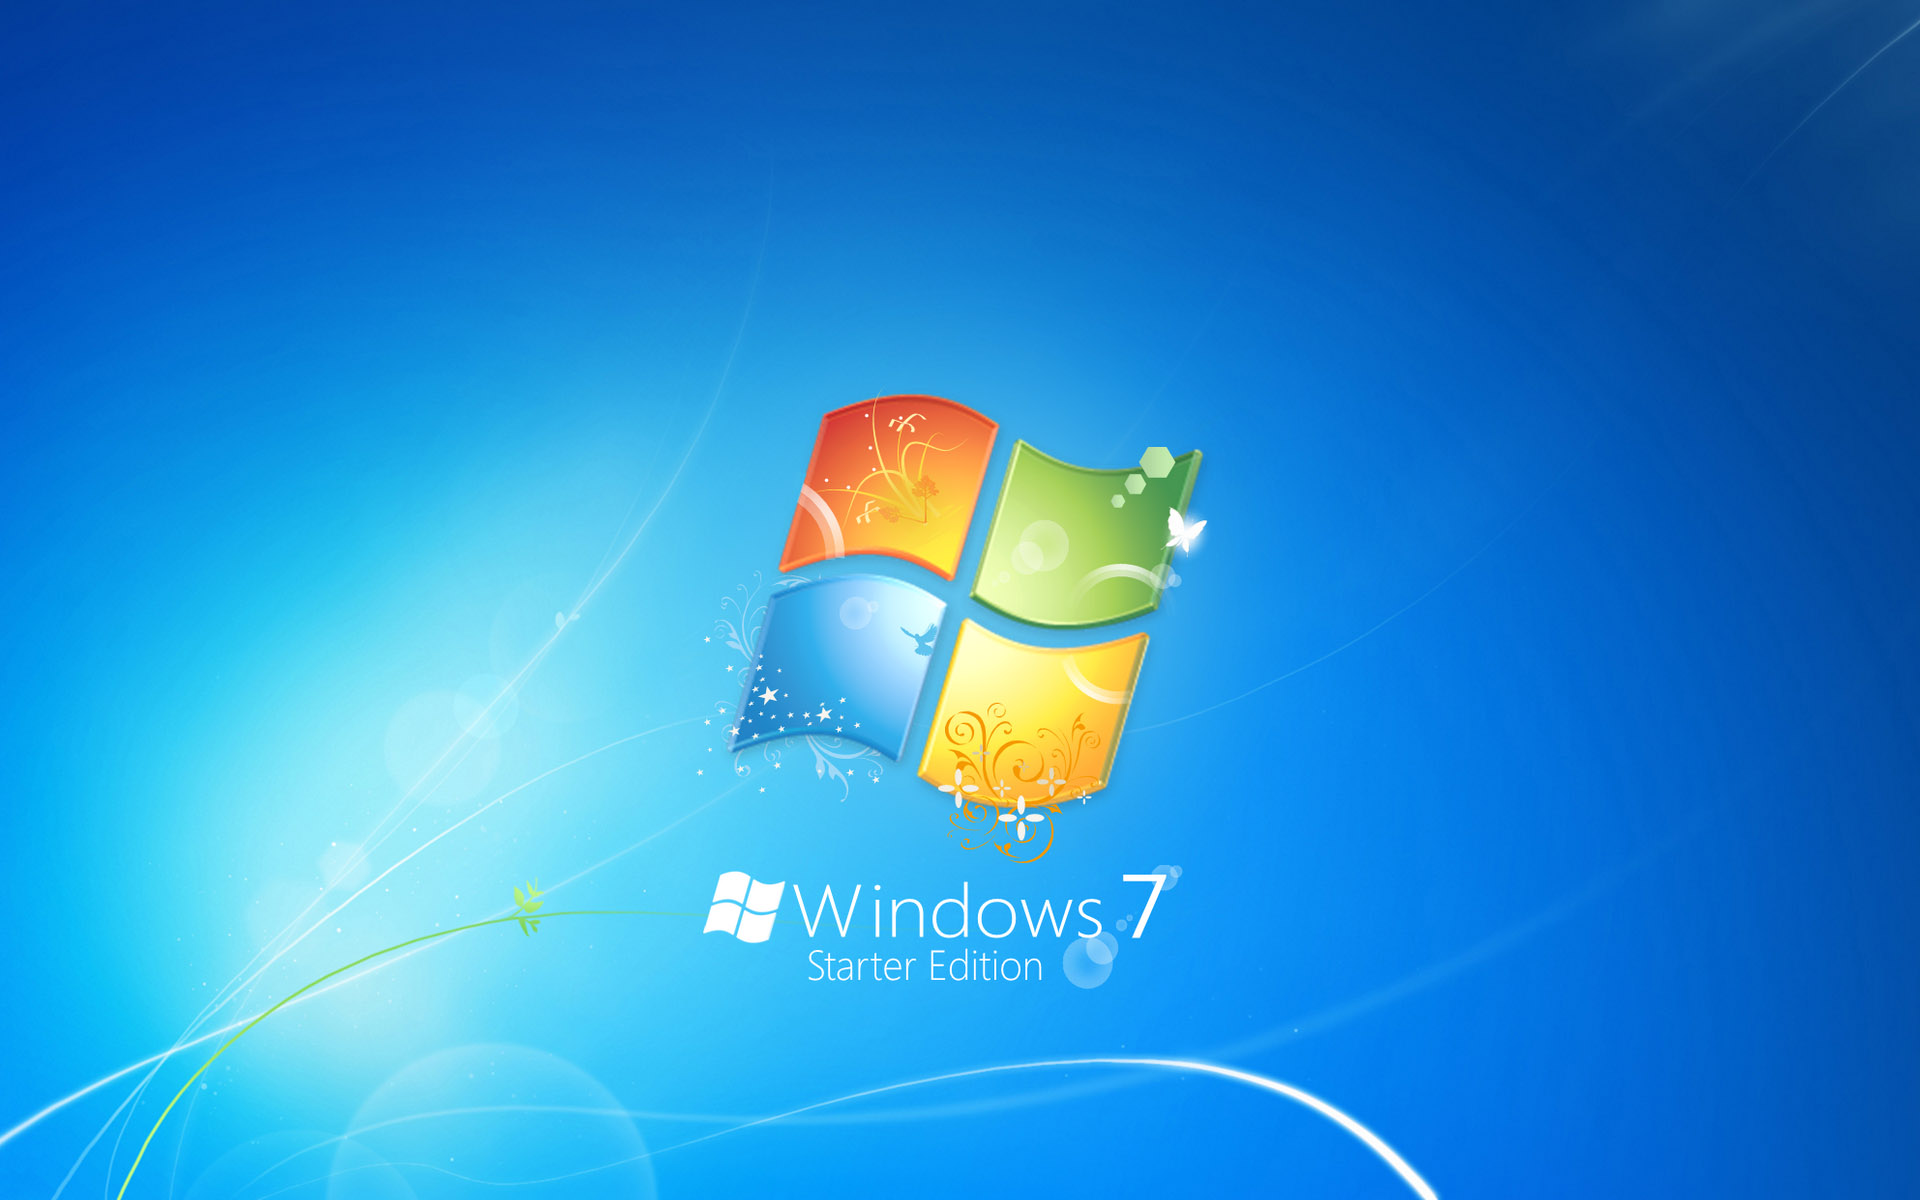 Windows 7 Starter Edition61399969 - Windows 7 Starter Edition - Windows, Starter, Professional, Edition